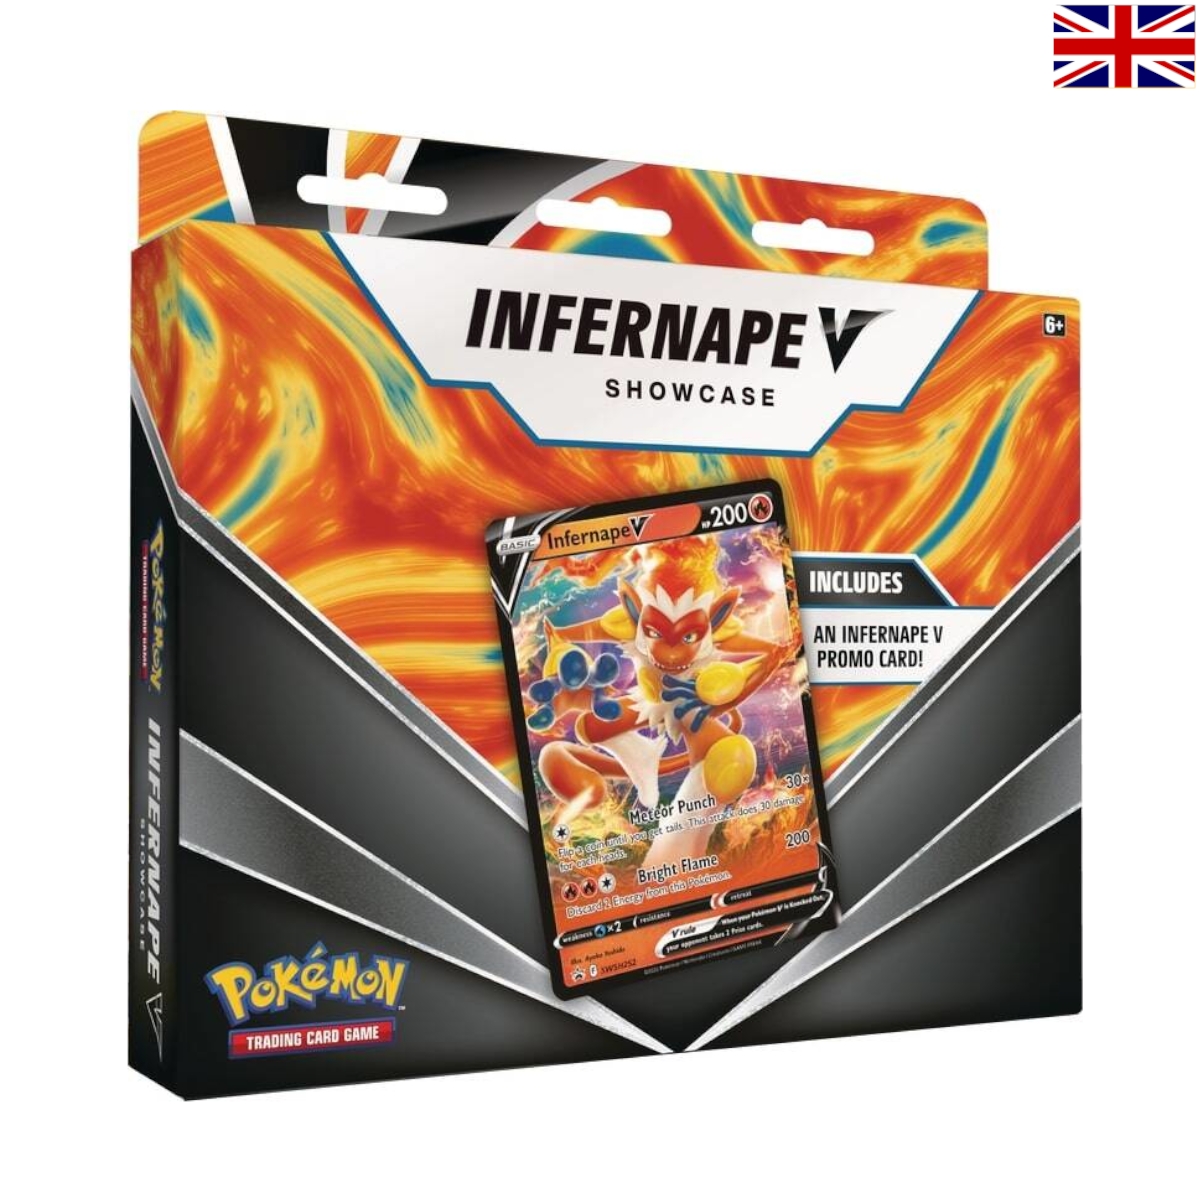 Pokémon - Infernape V Box Showcase